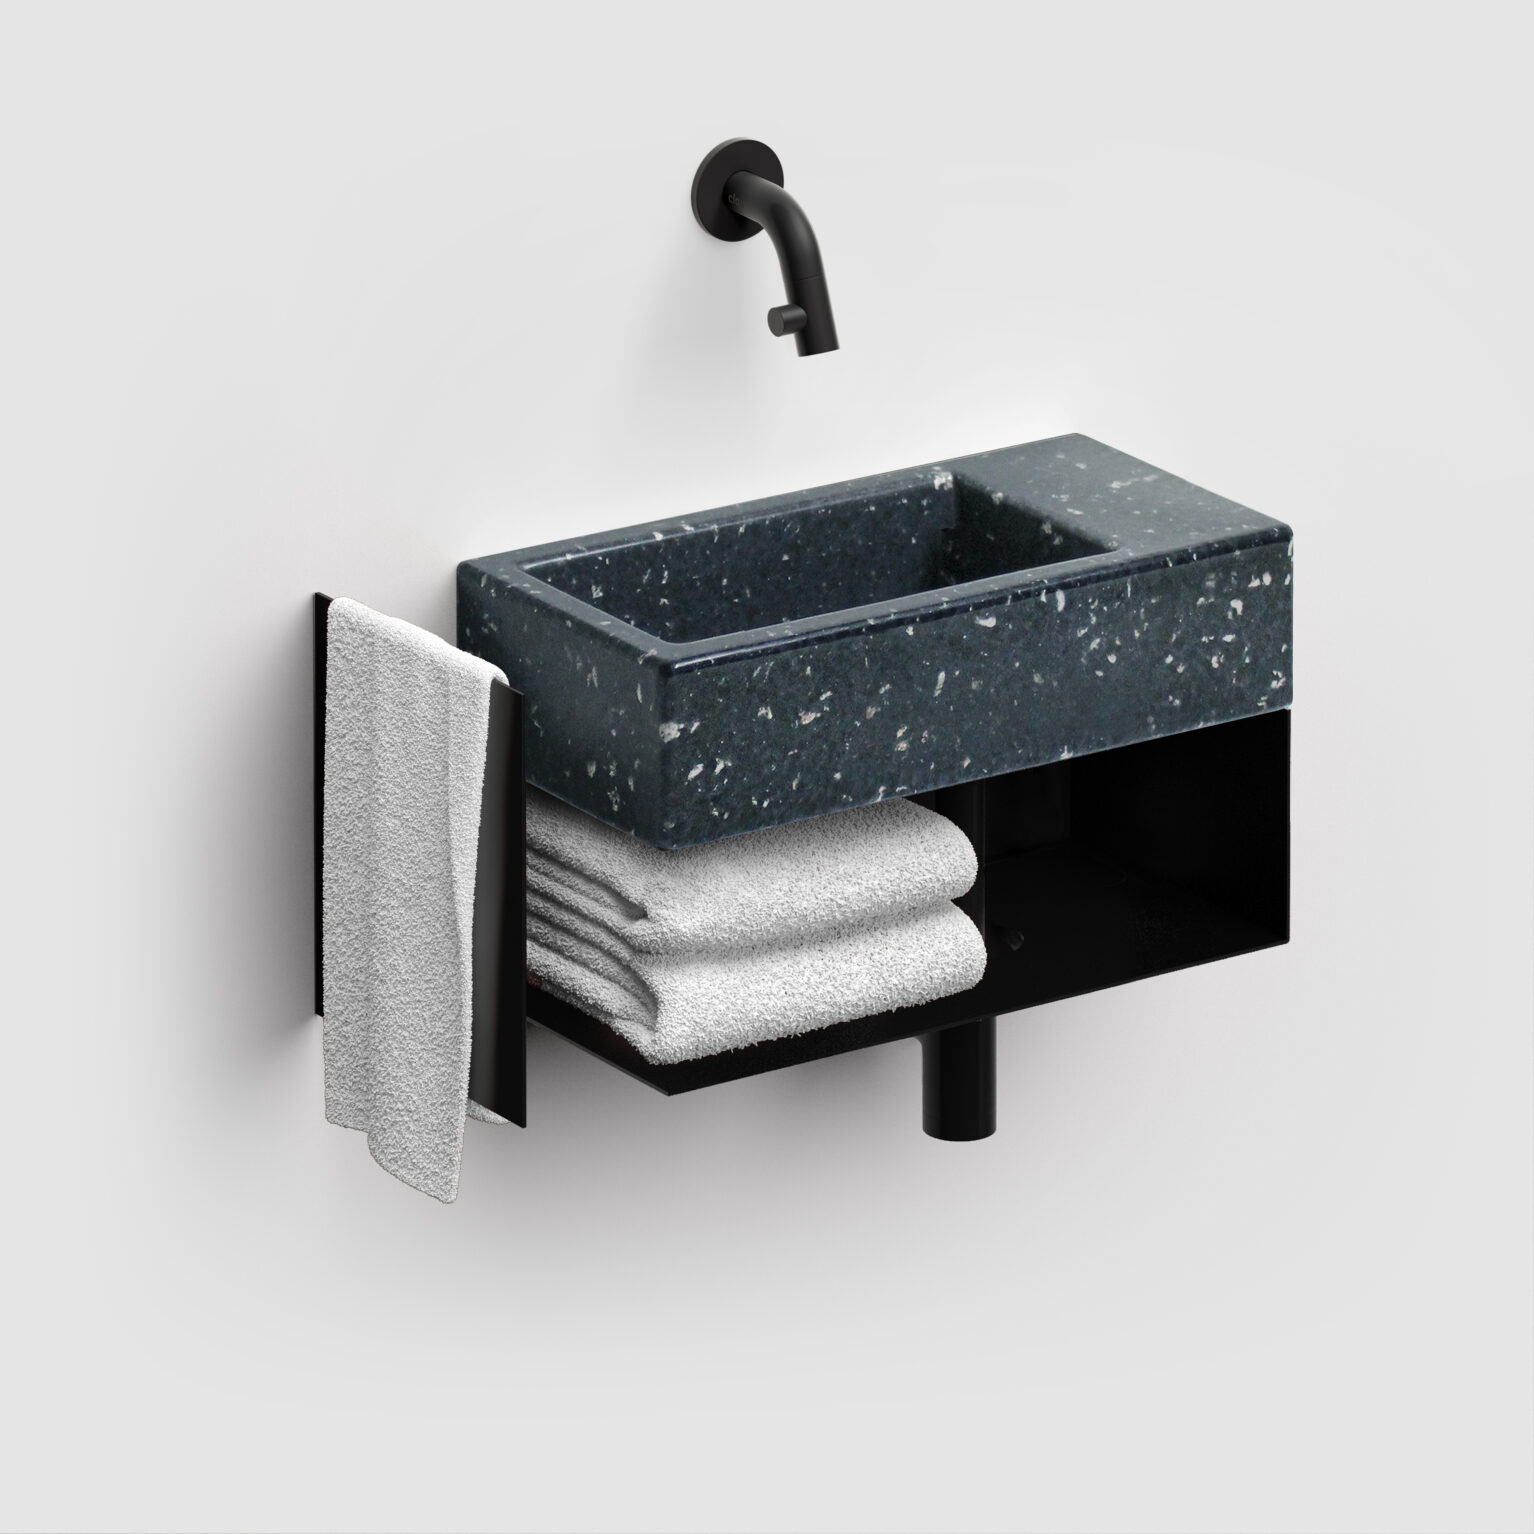 fontein-wastafel-terrazzo-zwart-toilet-badkamer-luxe-sanitair-Flush-3-rechts-clou-CL0380031-ecologisch-recycled-36cm-wandkraan-open-kast-mat-zwart-handdoek-houder-ecorazzo